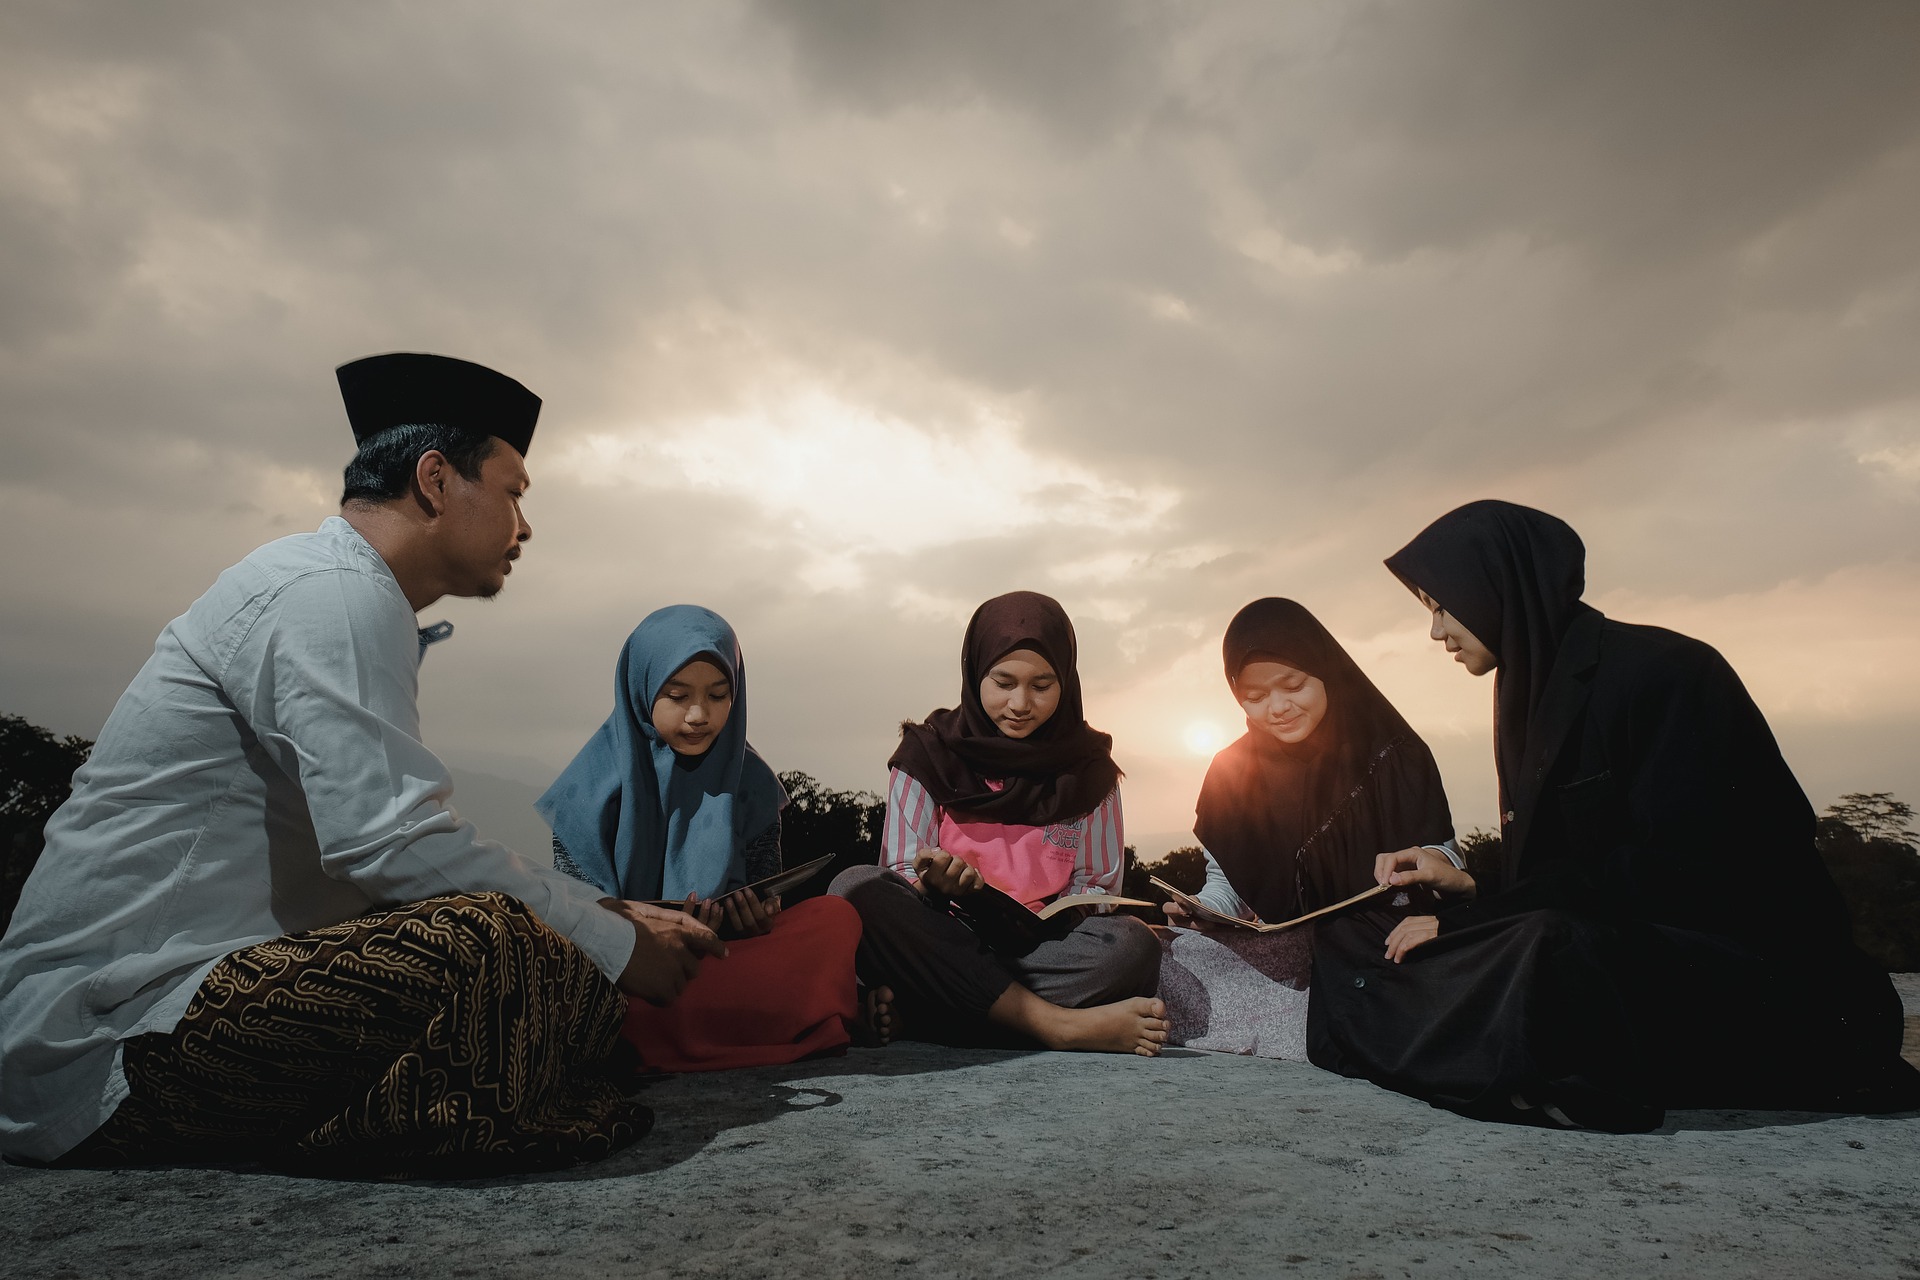 Bukan dari Aceh! Inilah 10 Daerah Muslim Terbesar di Indonesia, Daerah ini Ternyata Juaranya!